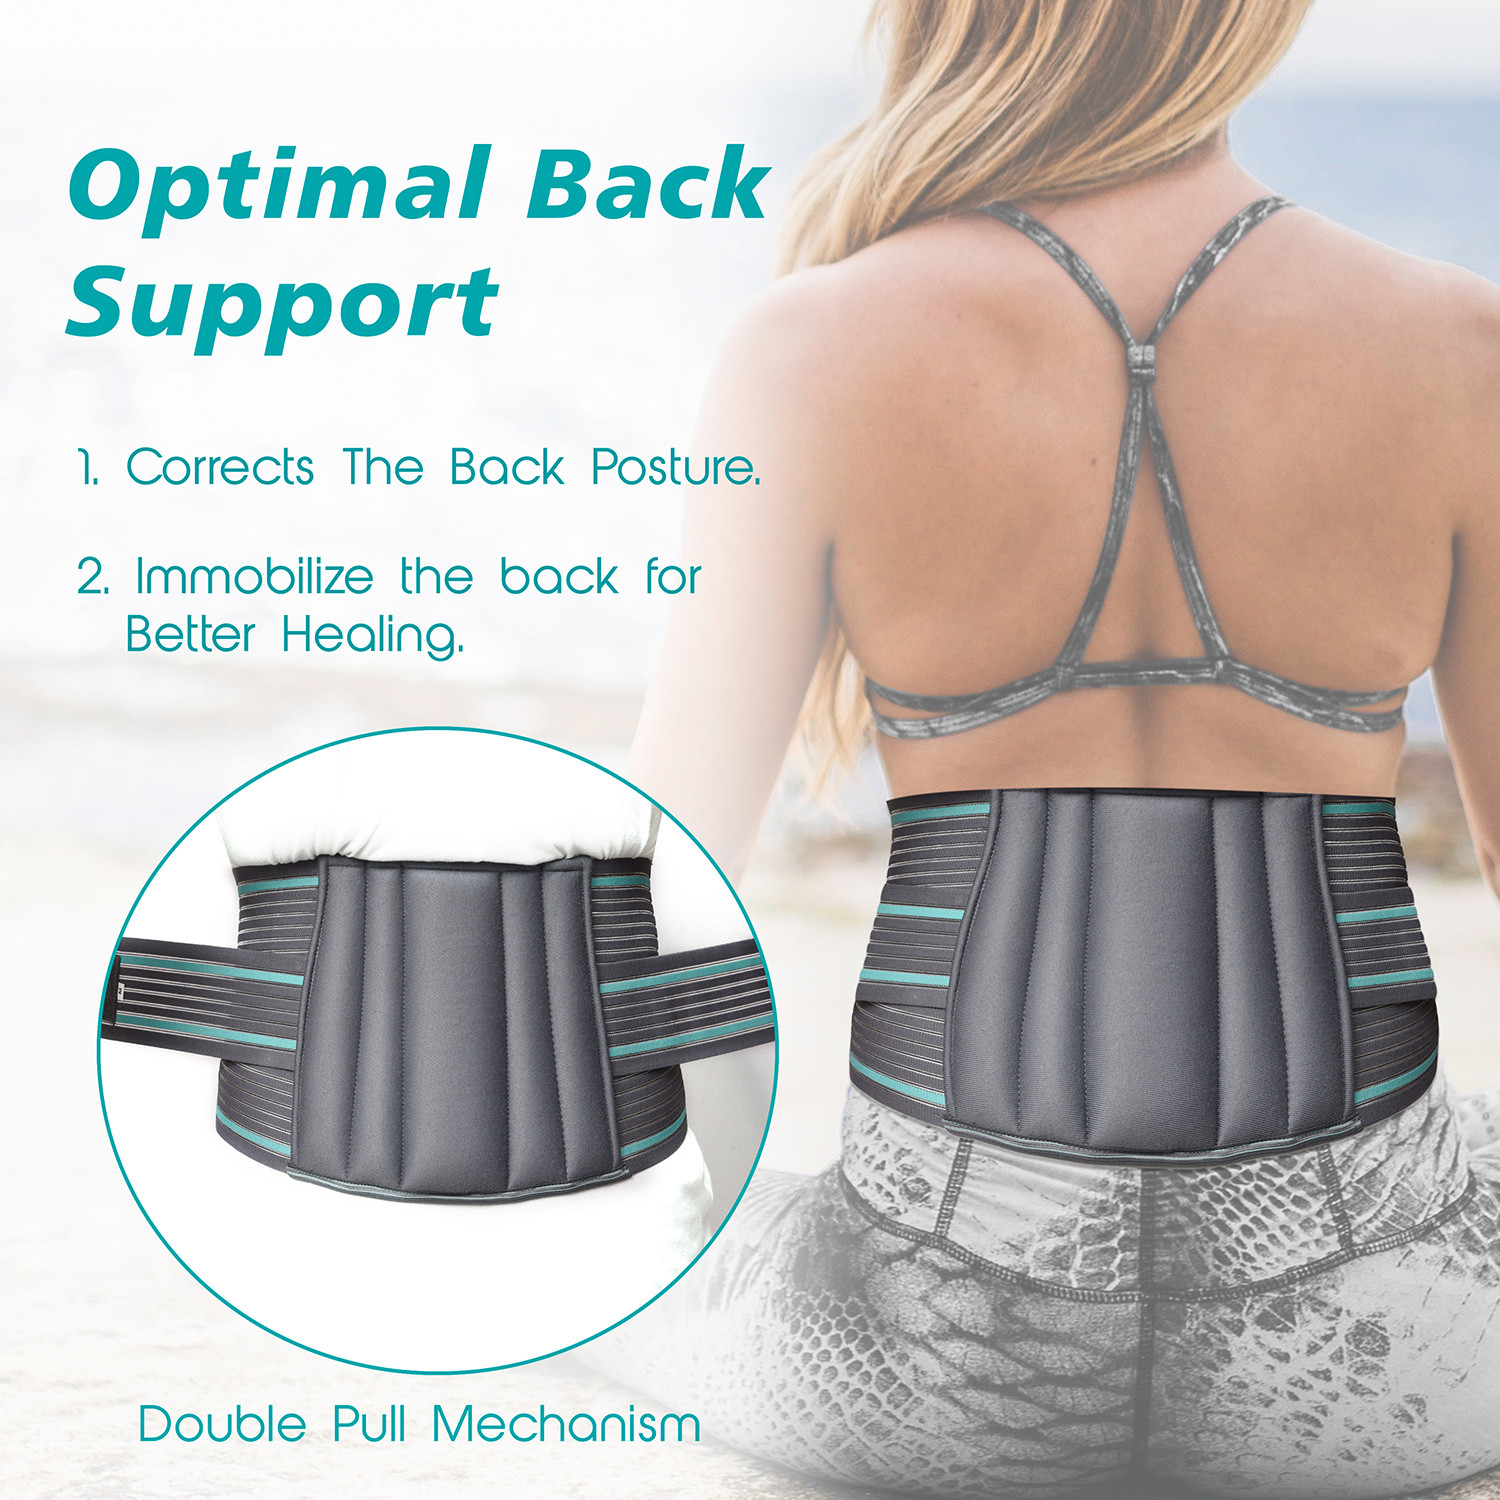 Kuber Industries Lumbar Sacral Belt | Spondylitis Back Pain Belt |Pregnancy Belt | Contoured Belt | Fat Reduction Belt | Lumbo Sacral Belt | Size-S | Gray